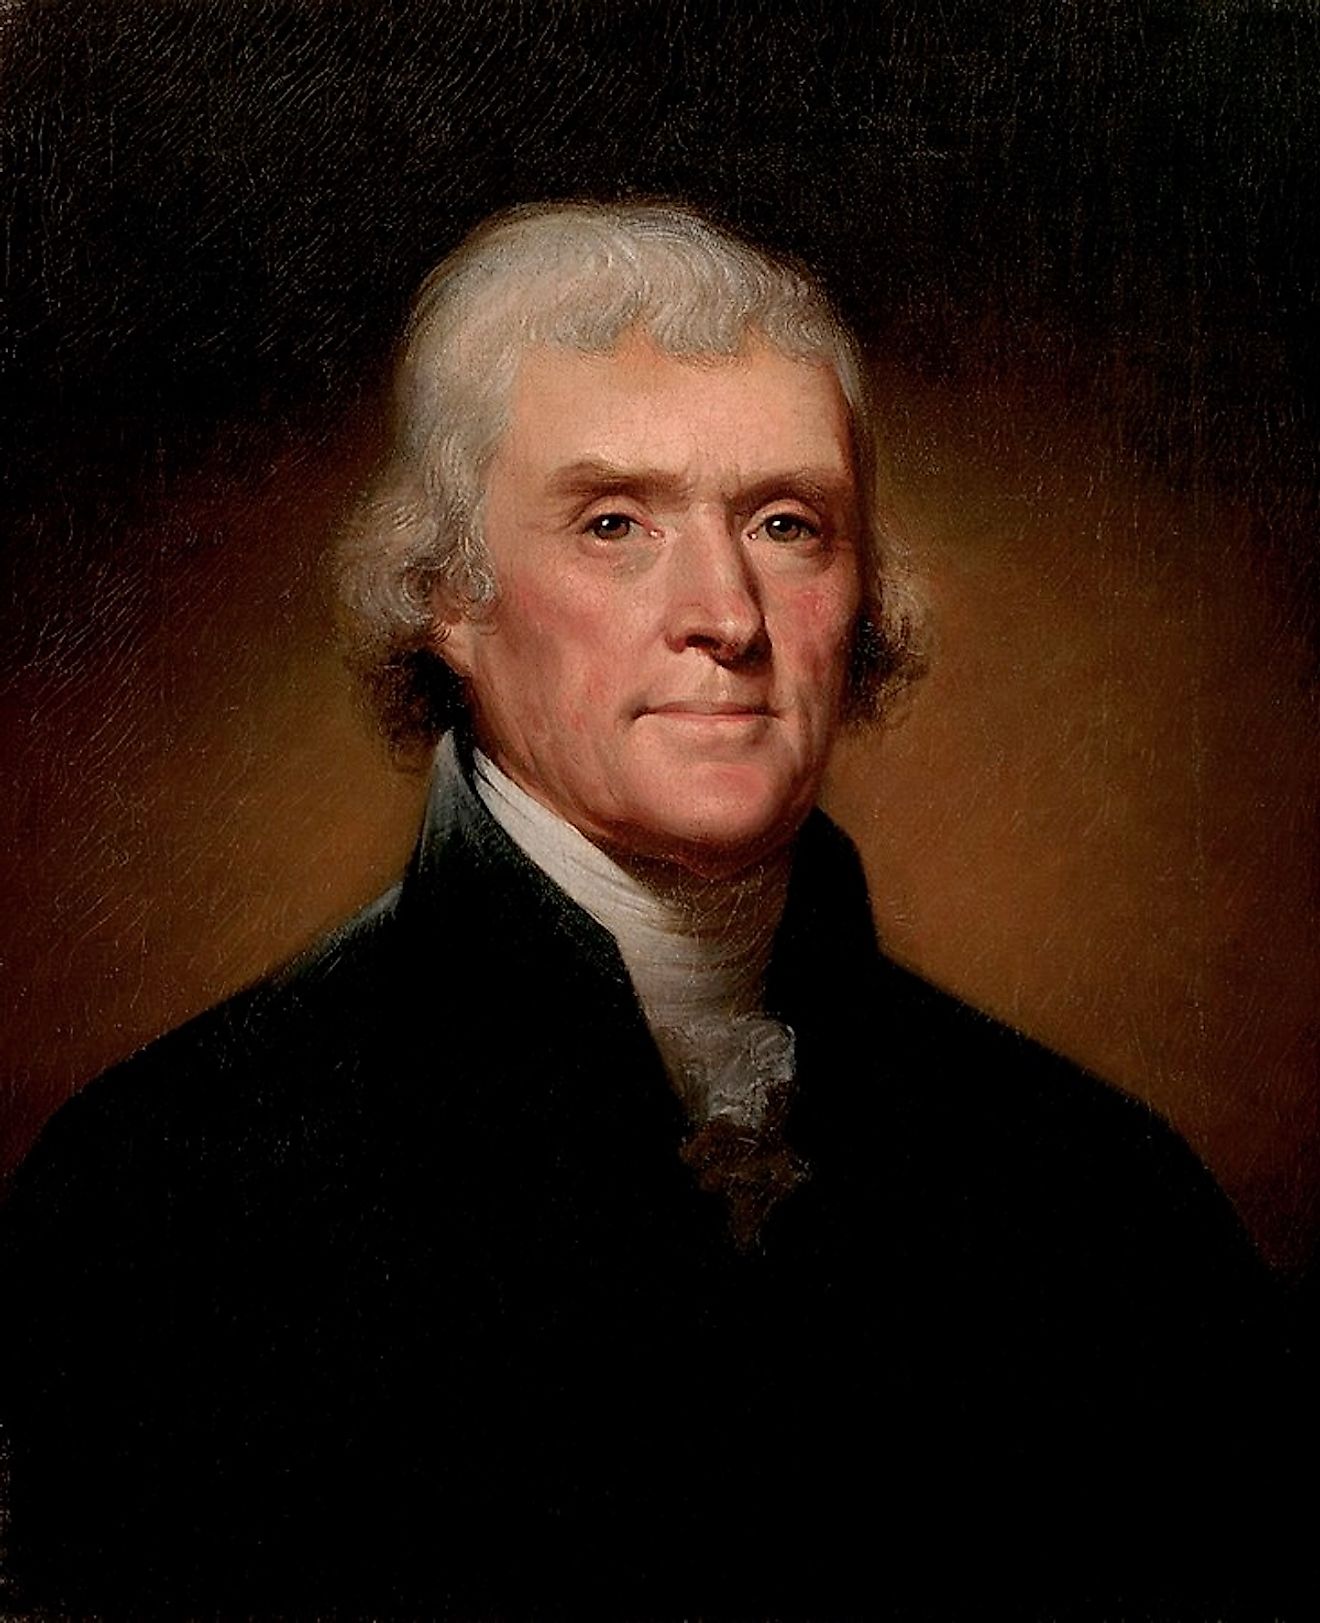 Thomas Jefferson. Image credit: Rembrandt Peale/Public domain